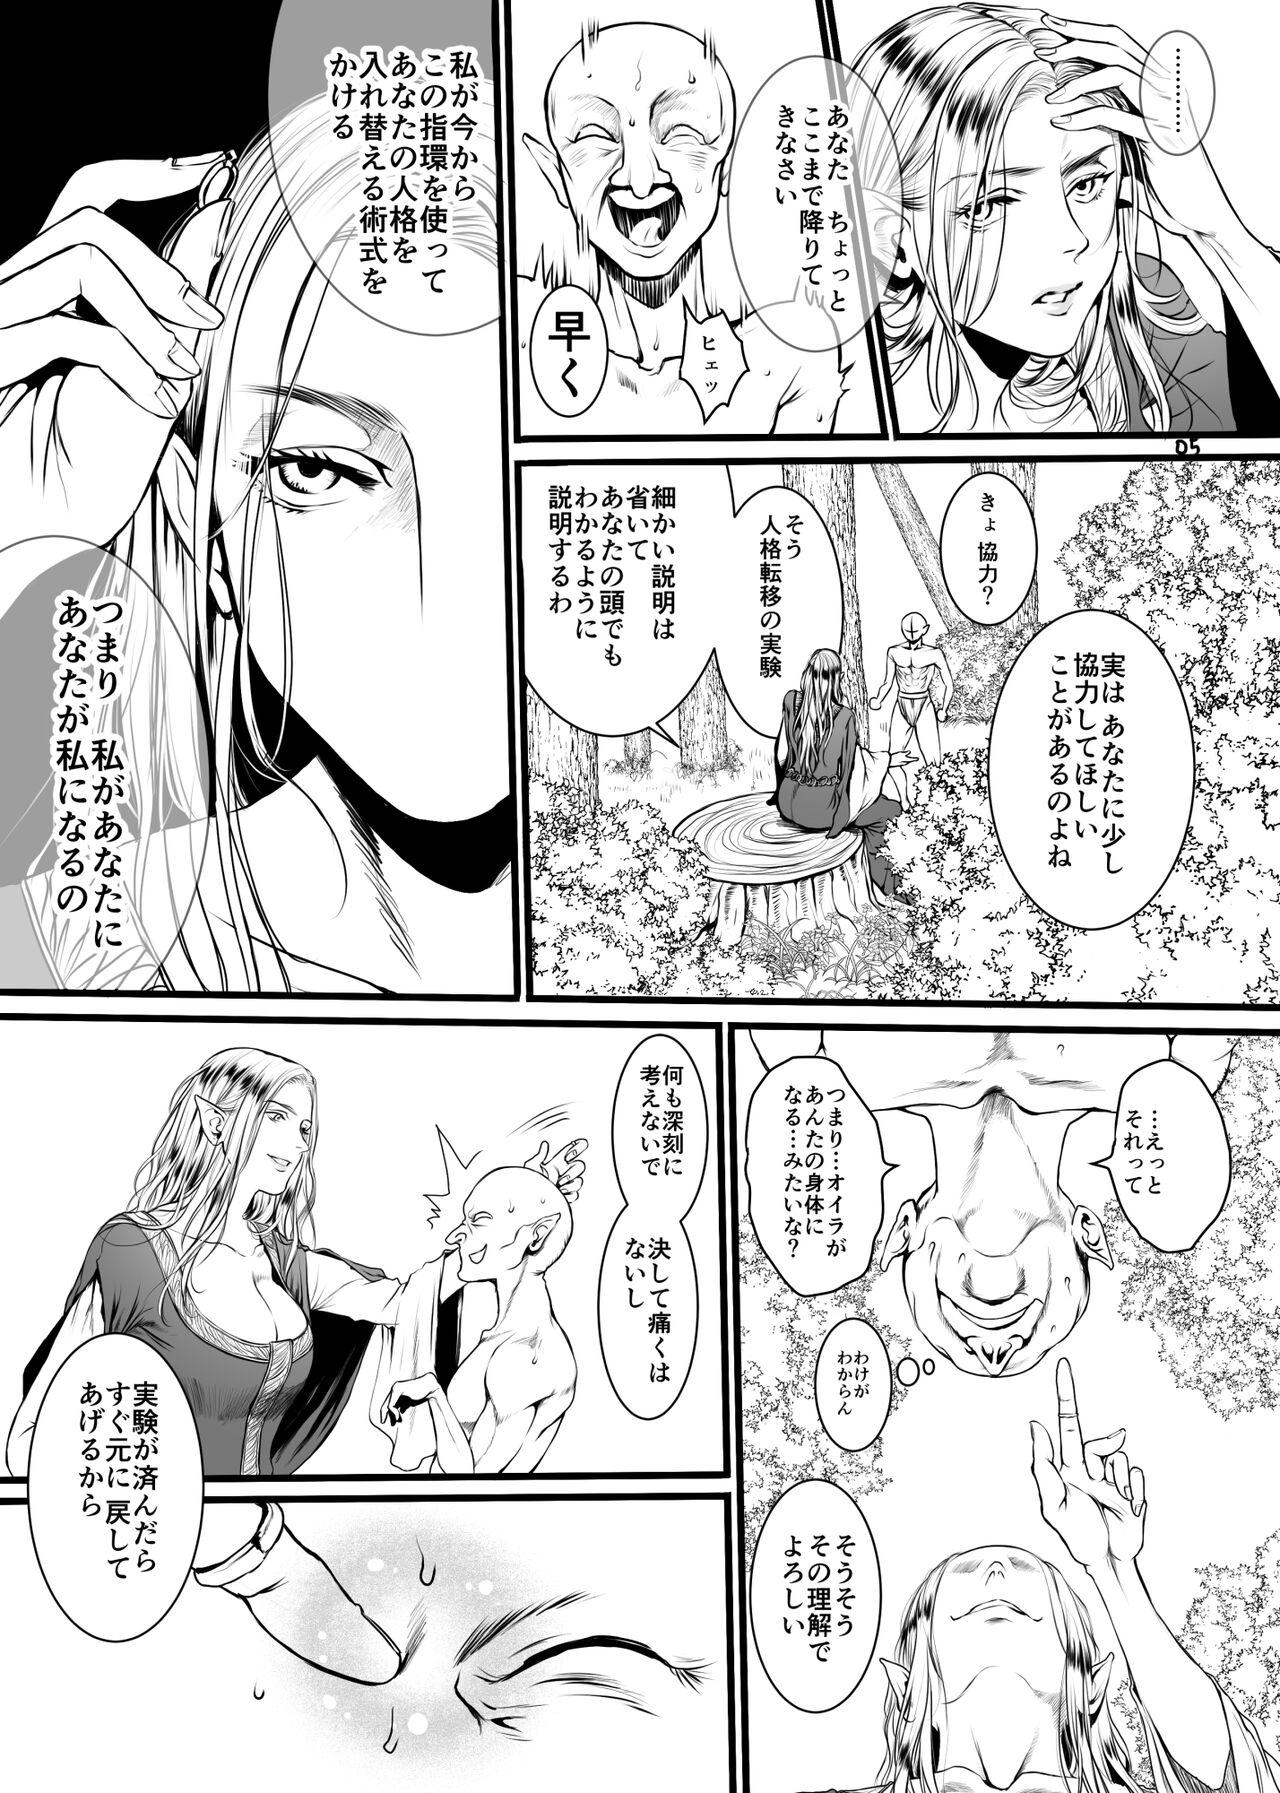 Bra Kansei wo Akiramta TSF Manga Jacking Off - Page 2